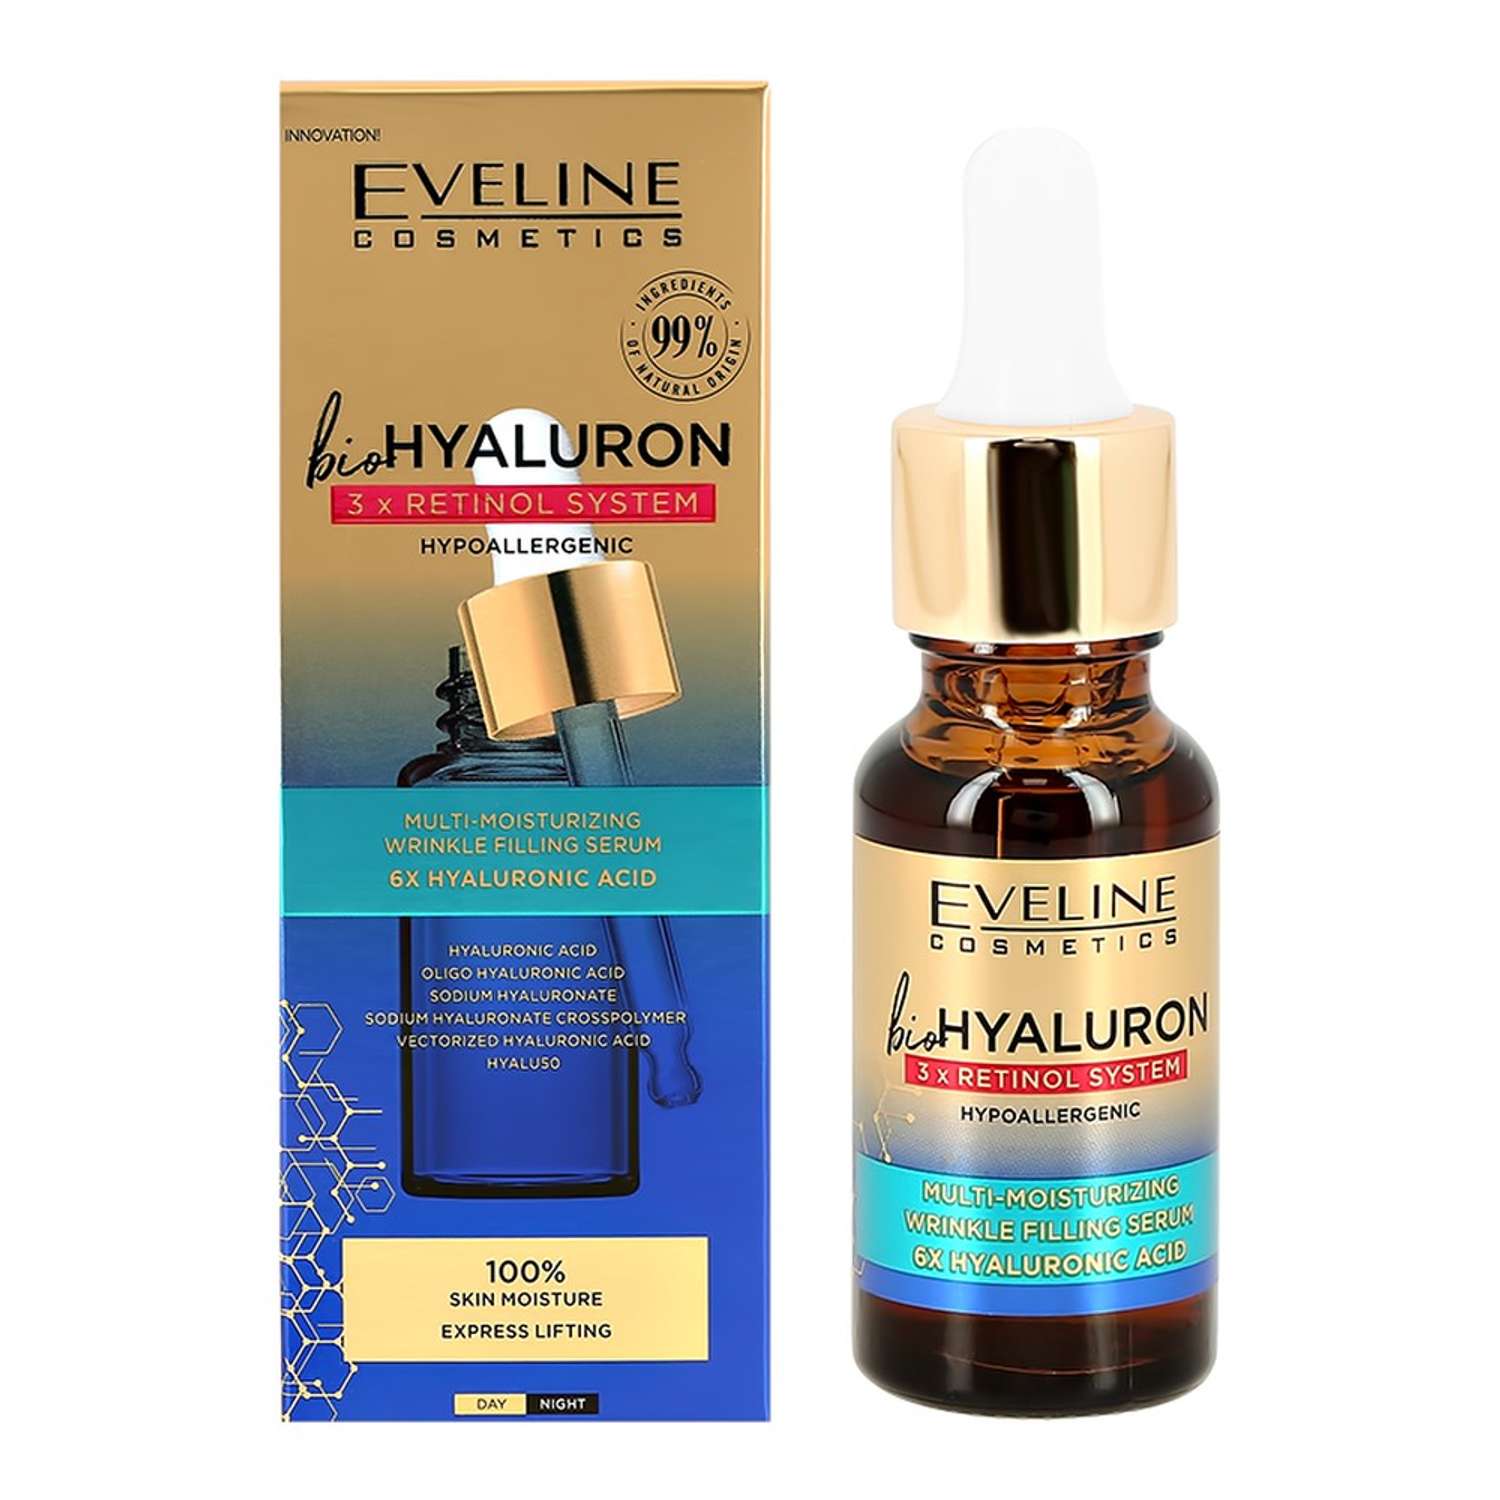 Сыворотка для лица EVELINE Biohyaluron 3xretinol system с гиалуроновой кислотой и ретинолом мультиувлажняющая 18 мл - фото 1